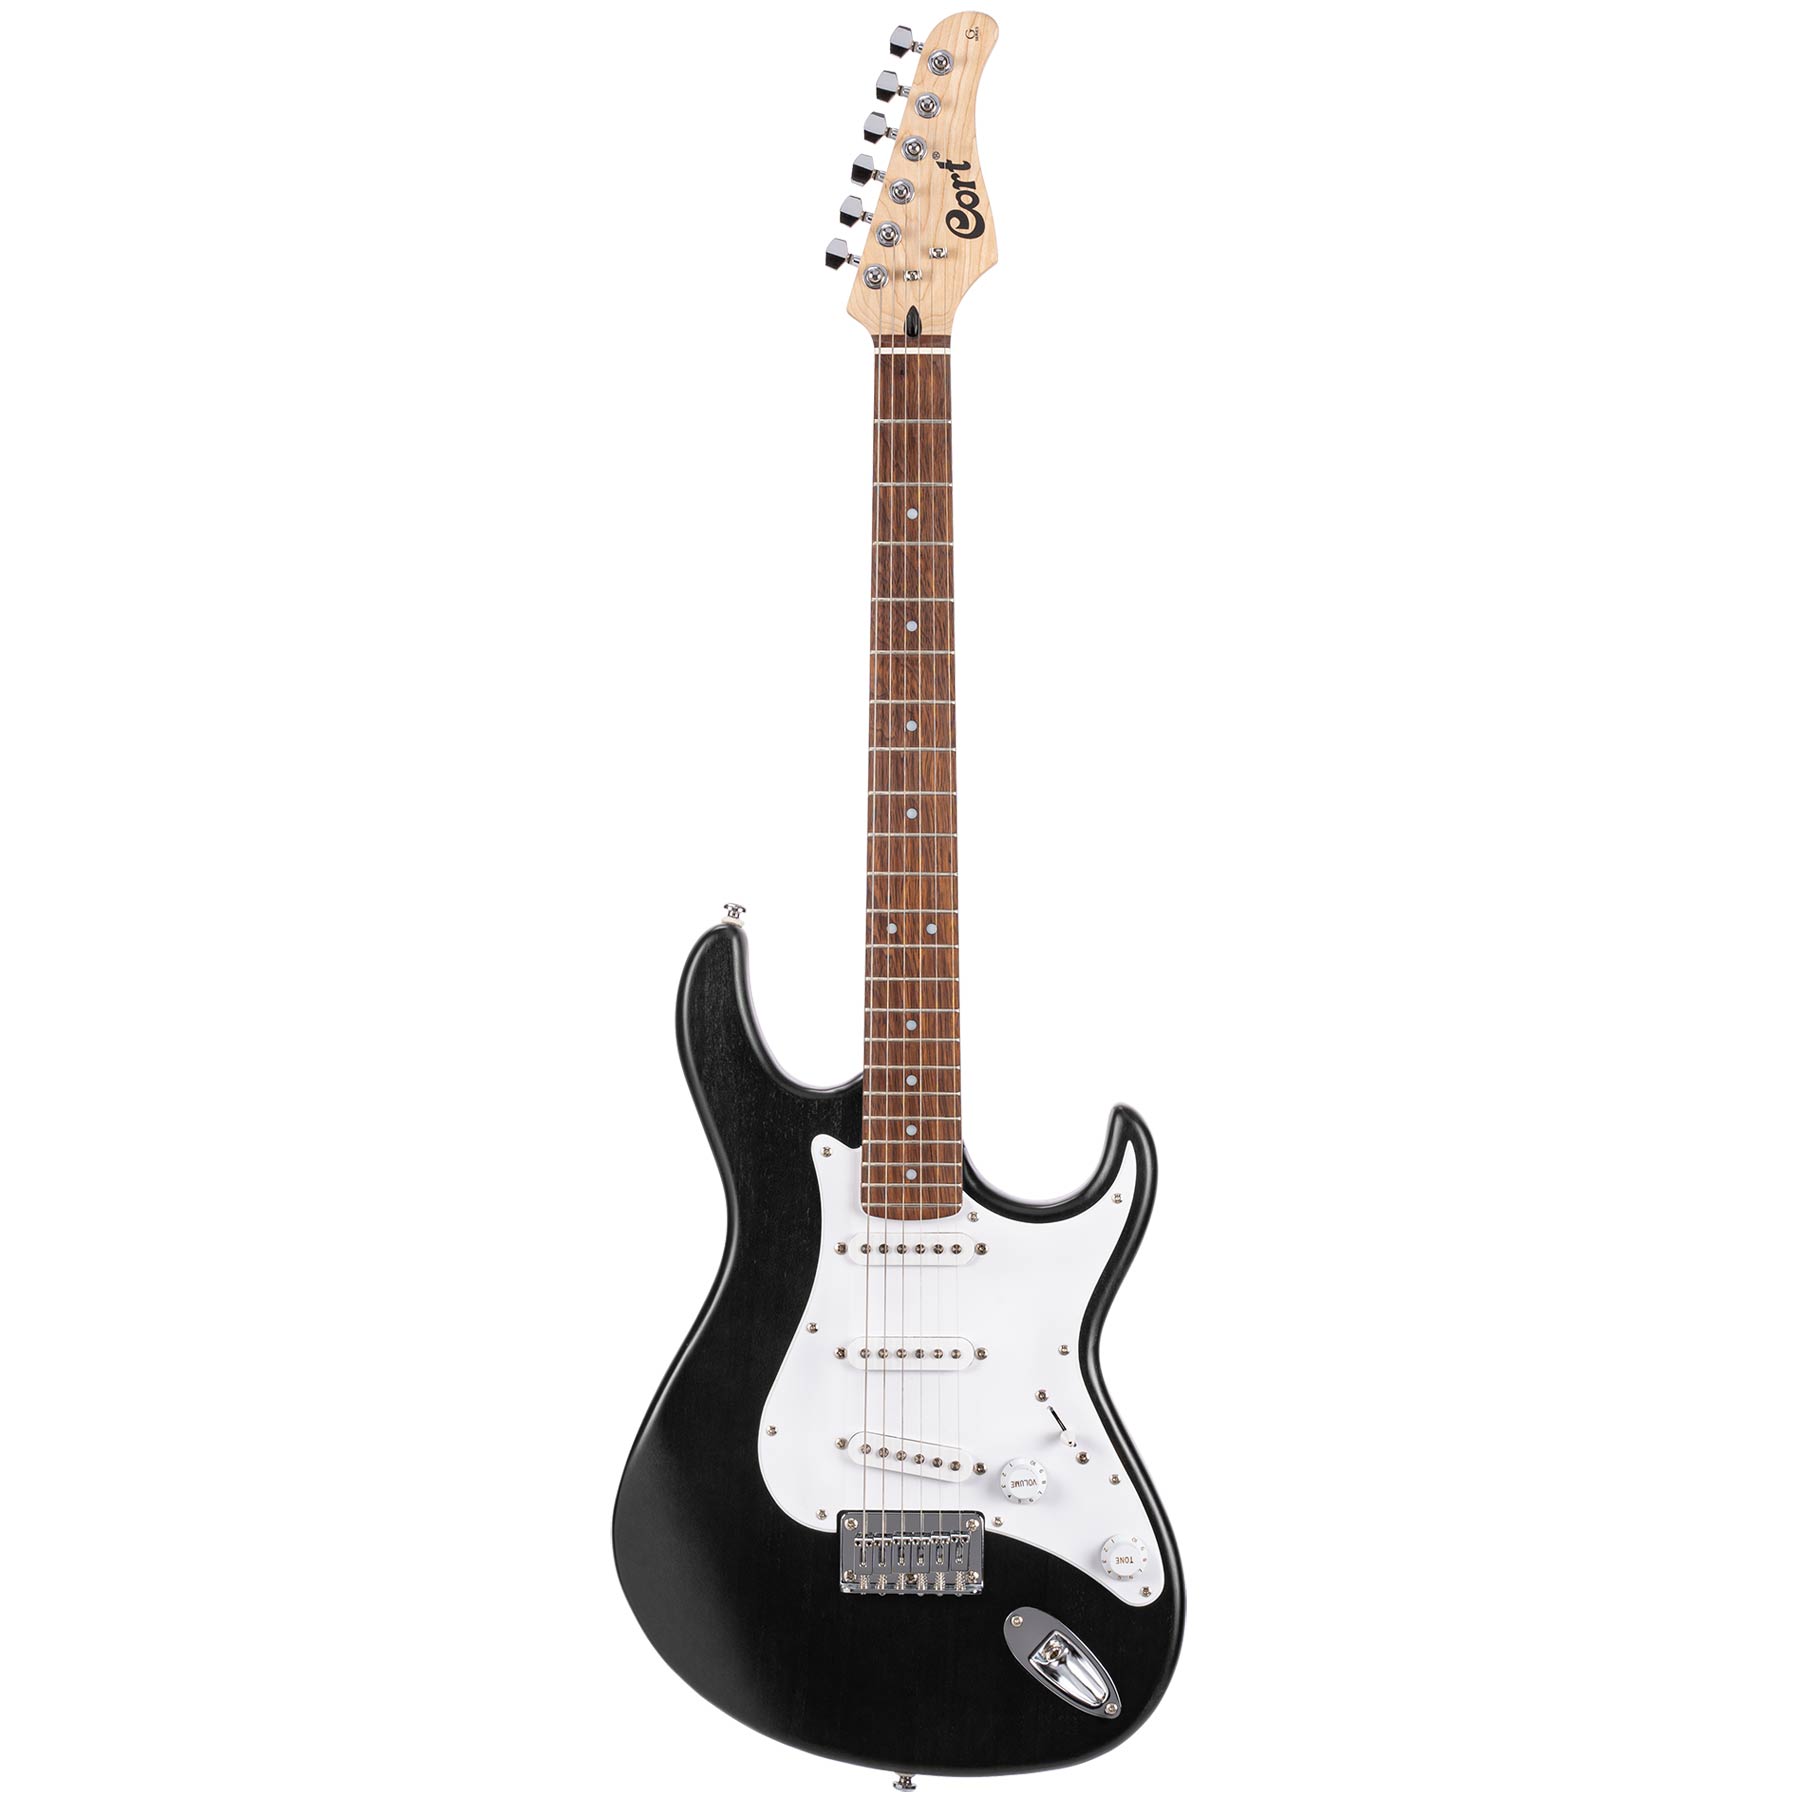 Comprar Guitarra Electrica de iniciacion al mejor precio en Prieto Msica